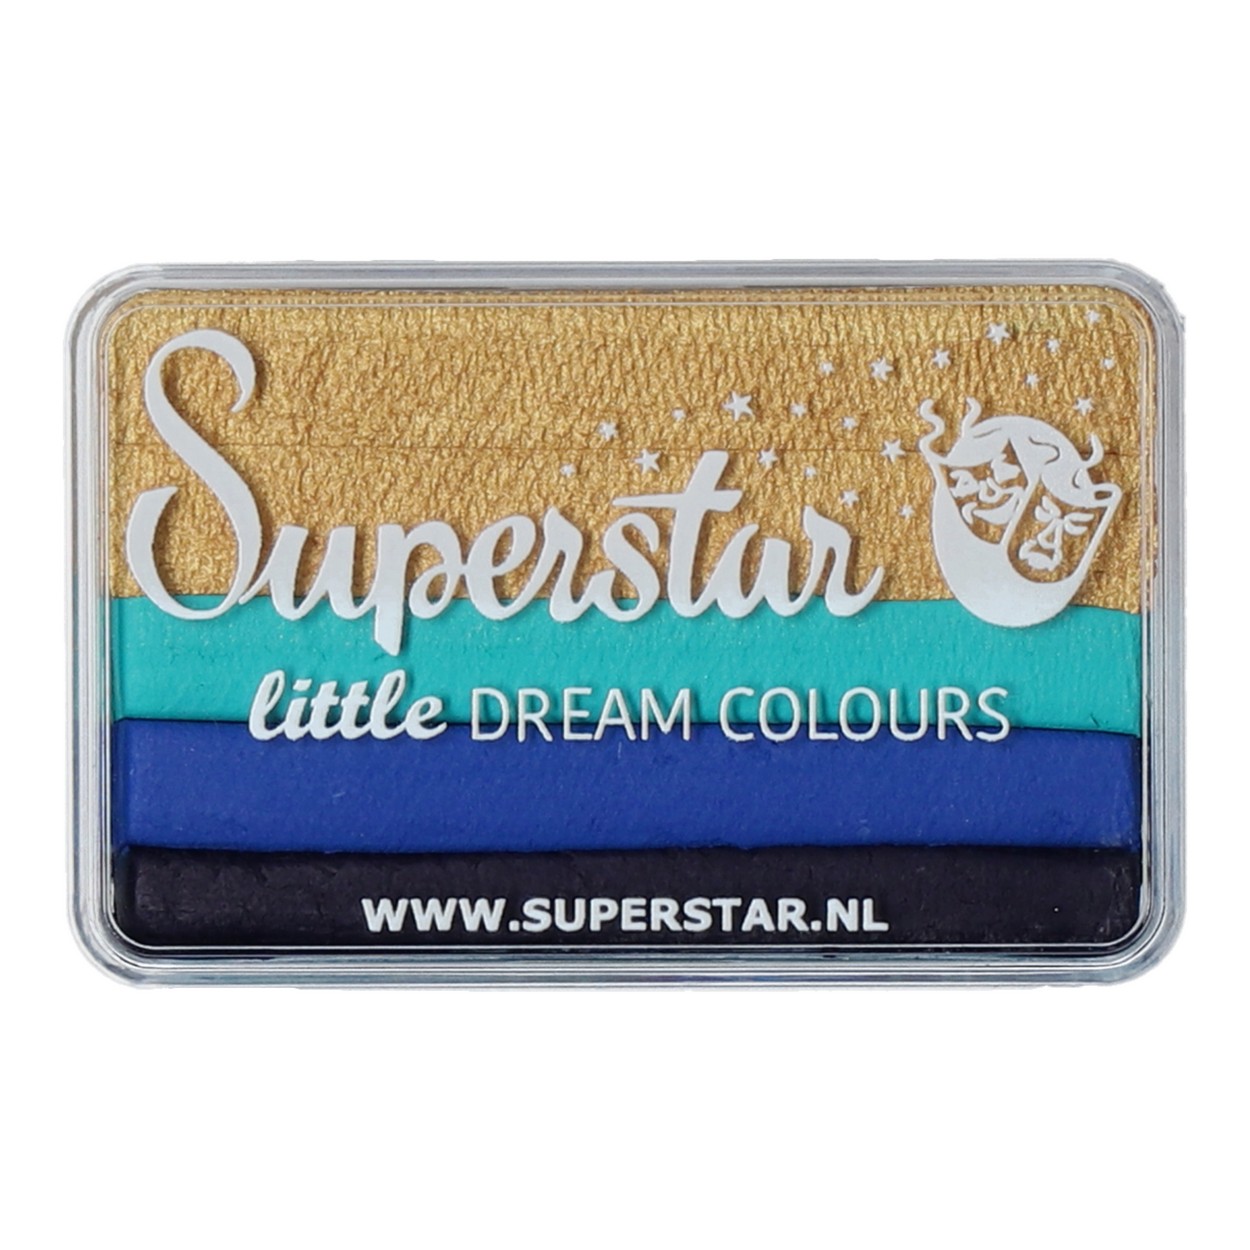 Superstar Little Dream Colours - Little Royal, 30 gram